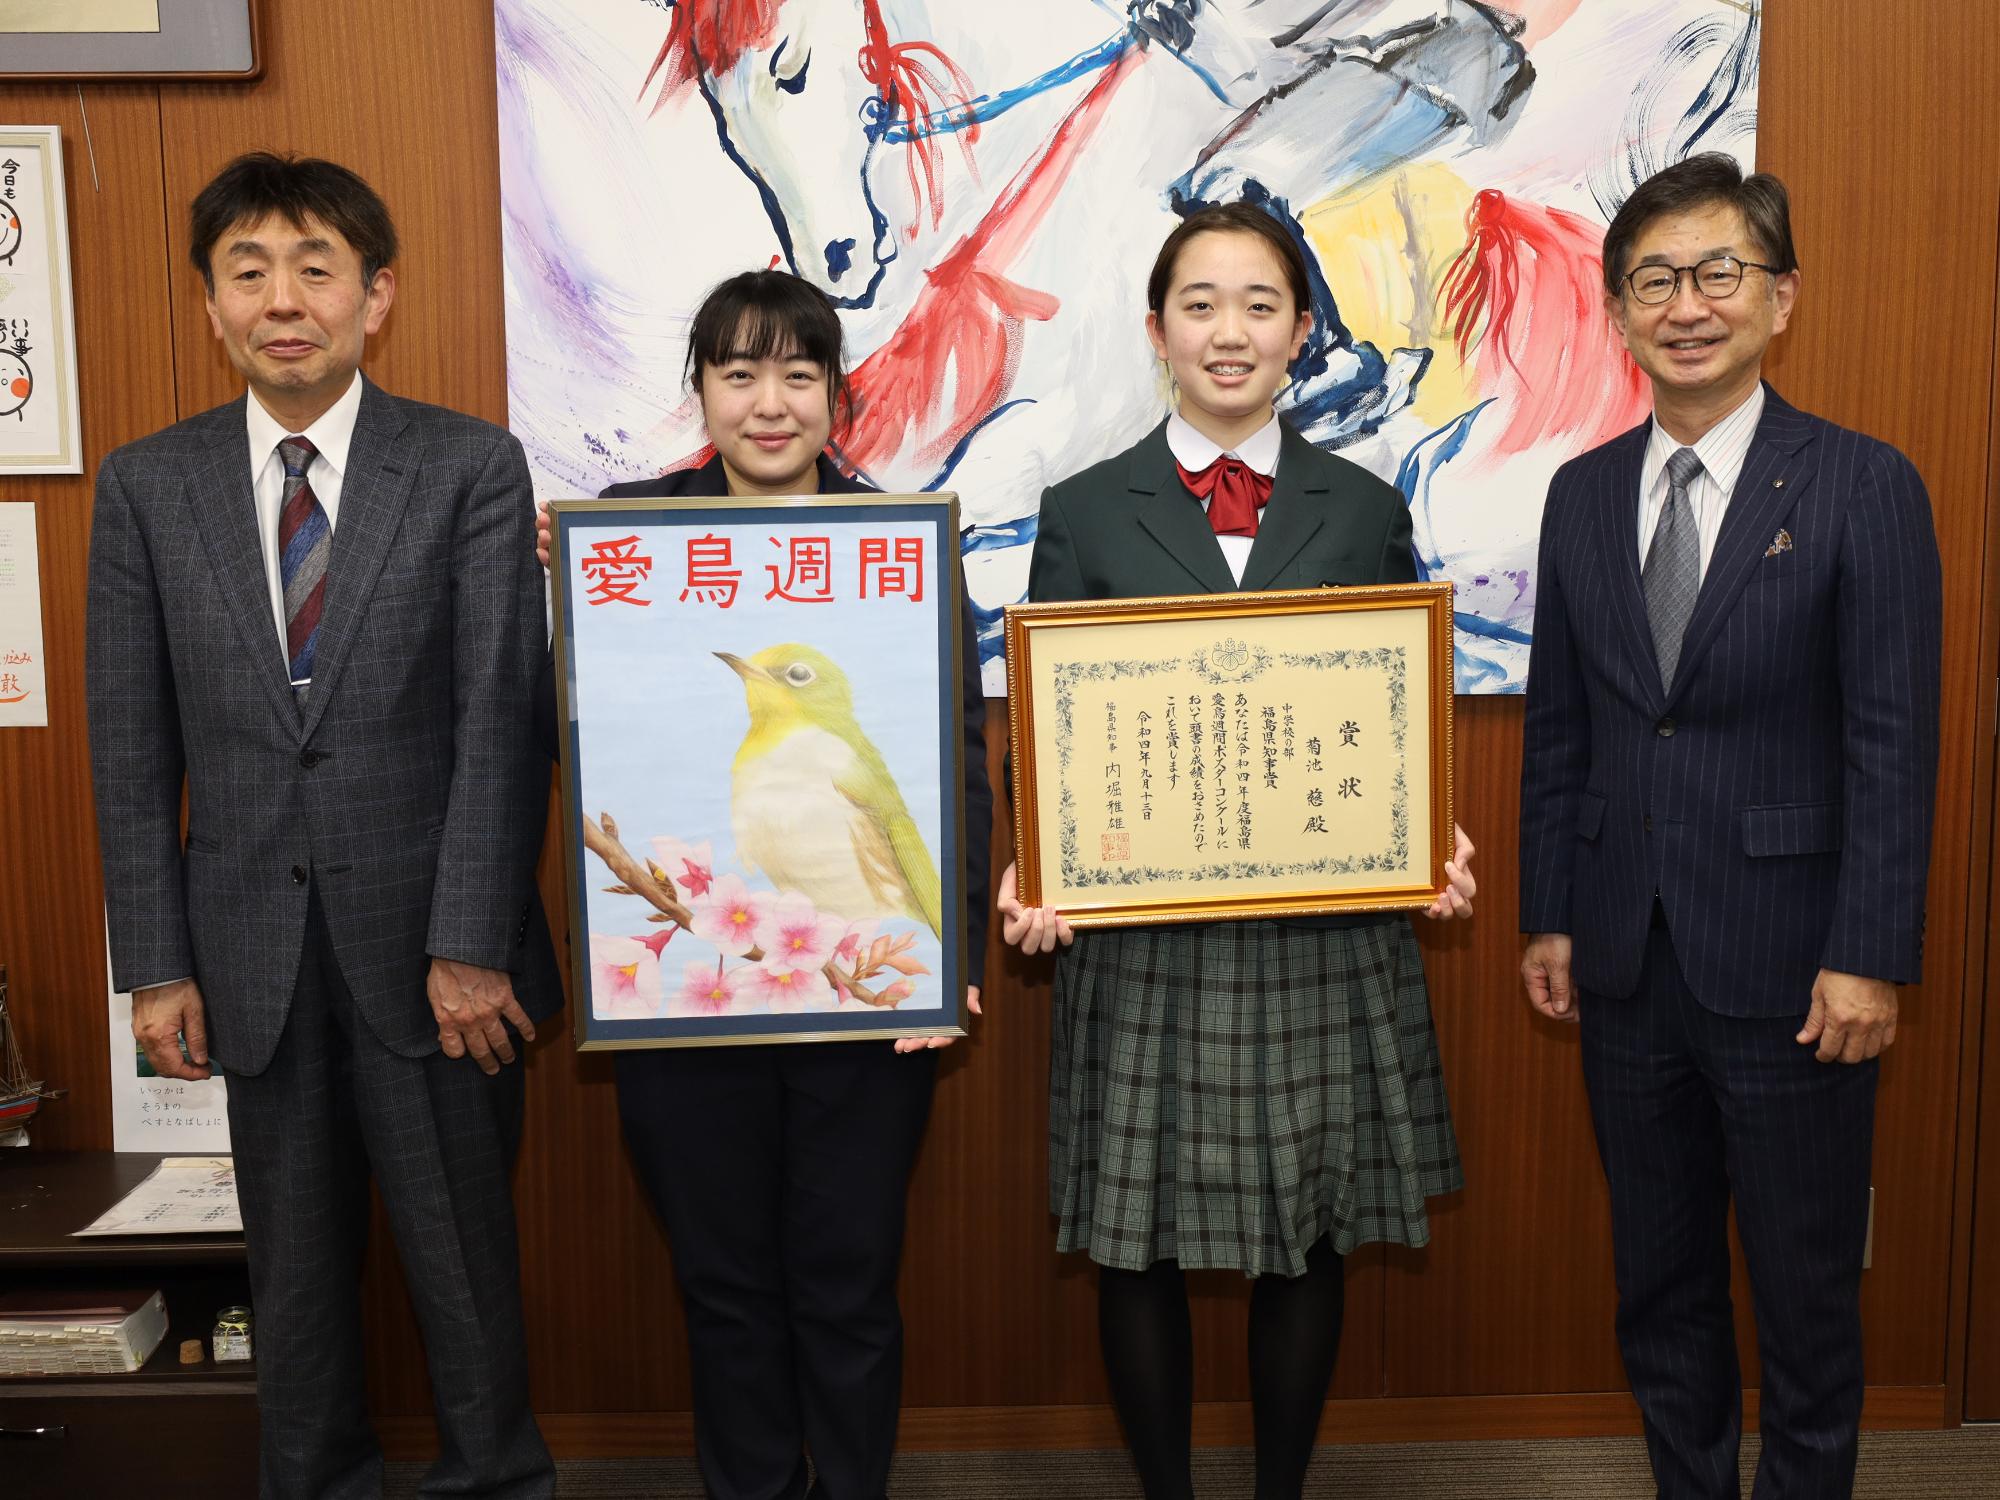 県知事賞を受賞した菊池さんが福地教育長に報告する様子